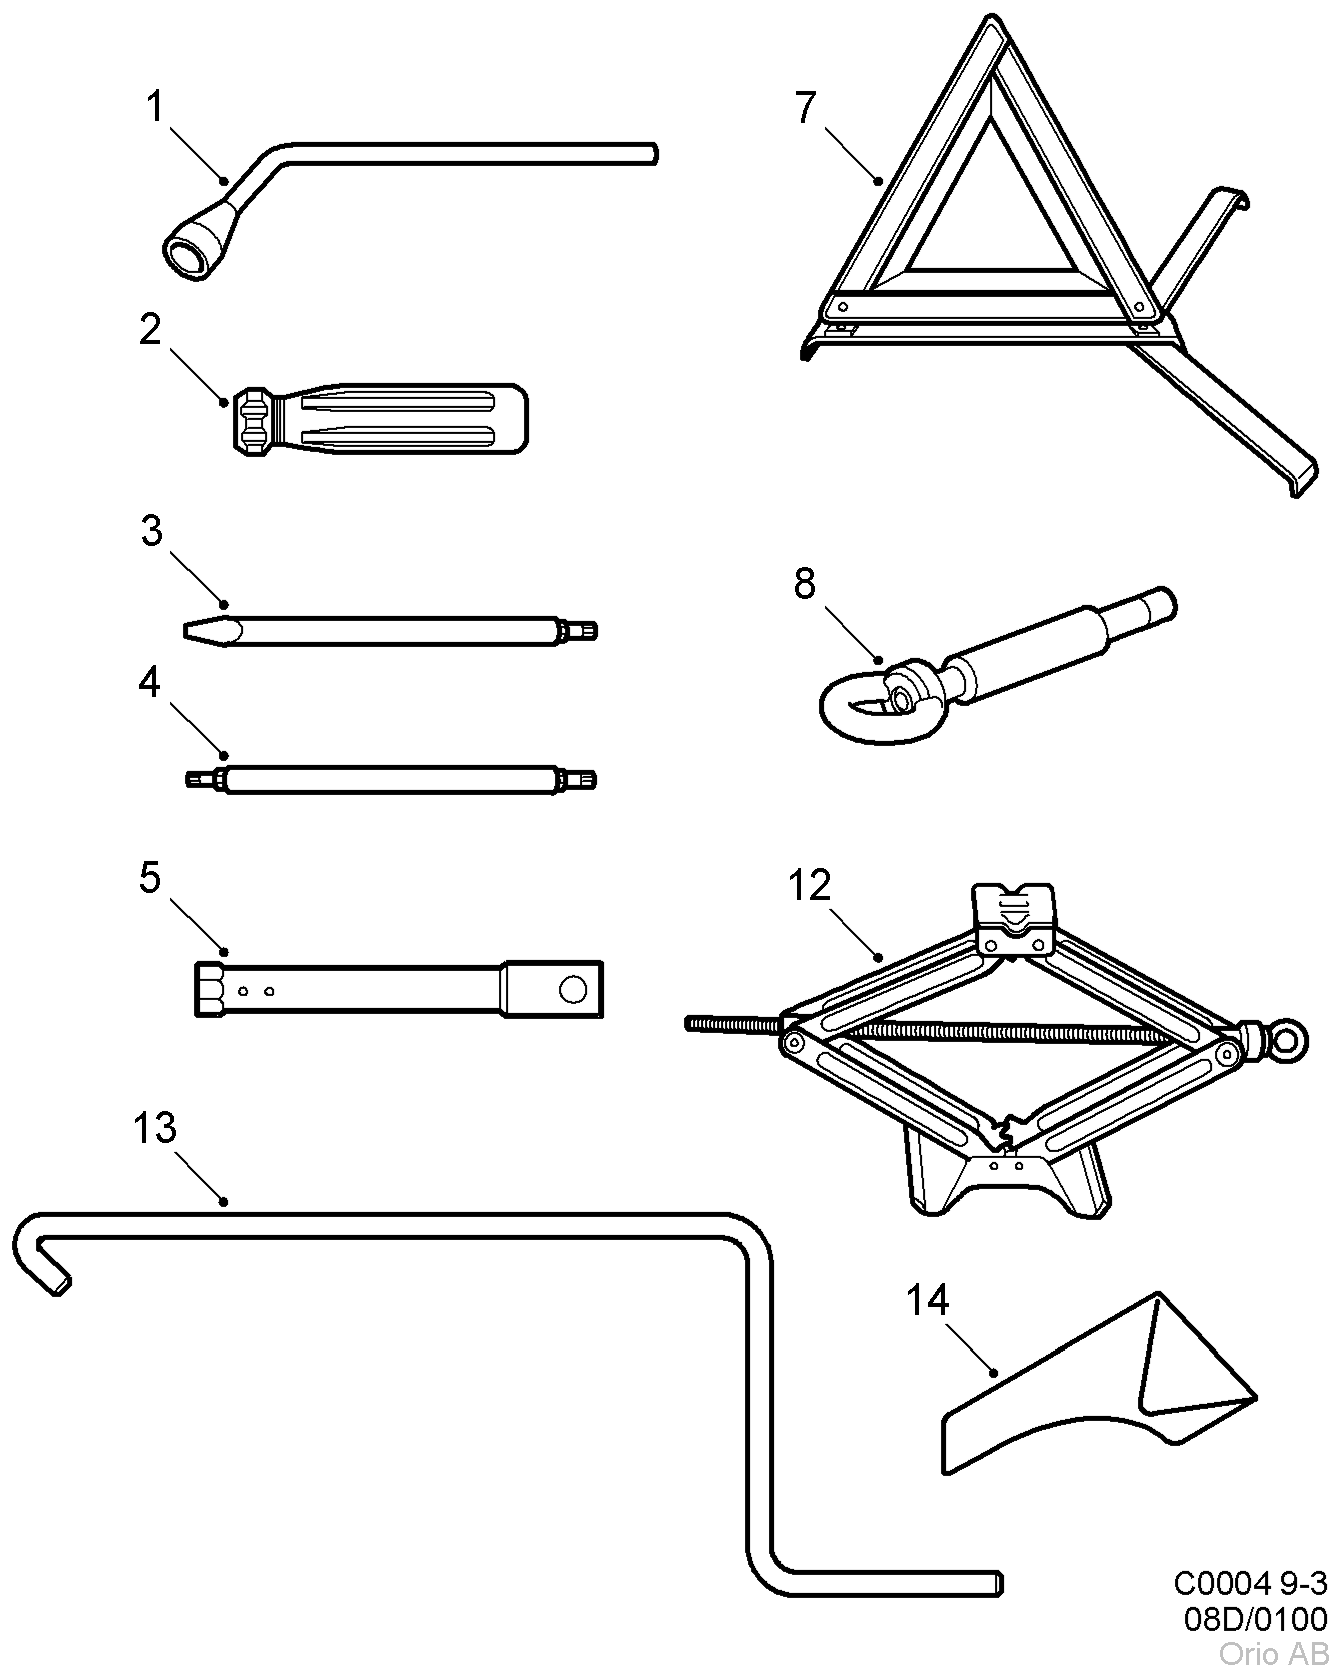 Tool kit (1998 - 2003)